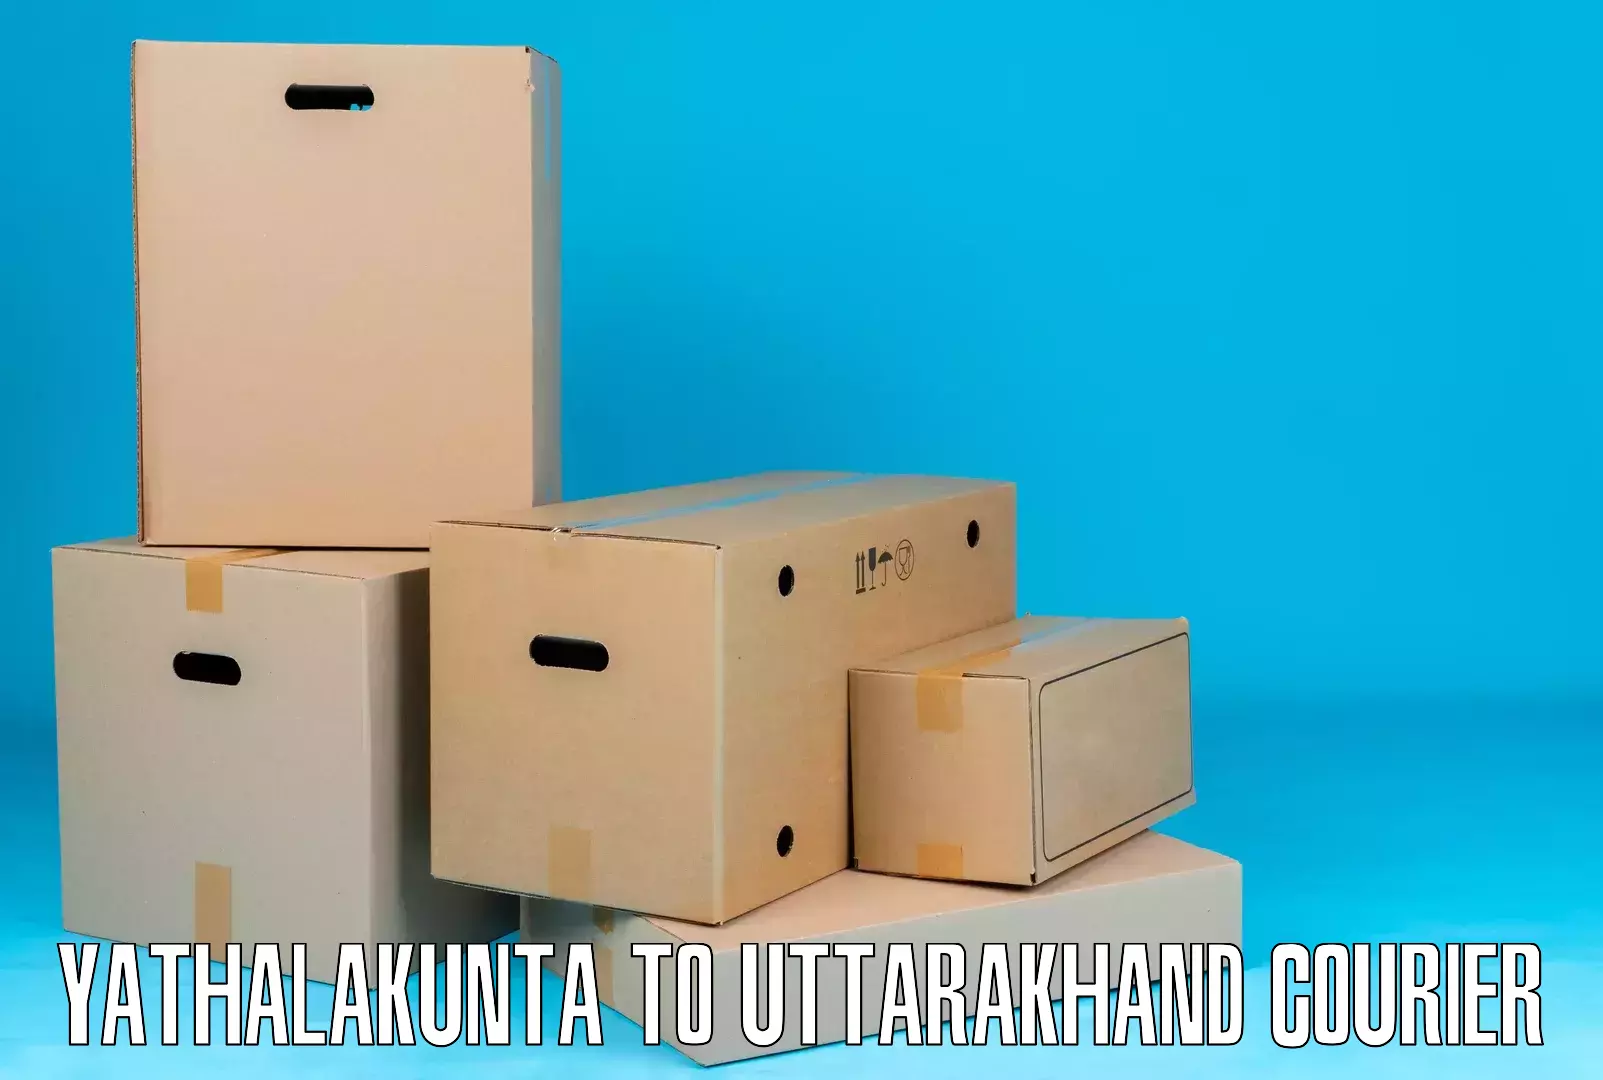 Local courier options Yathalakunta to Kotdwara